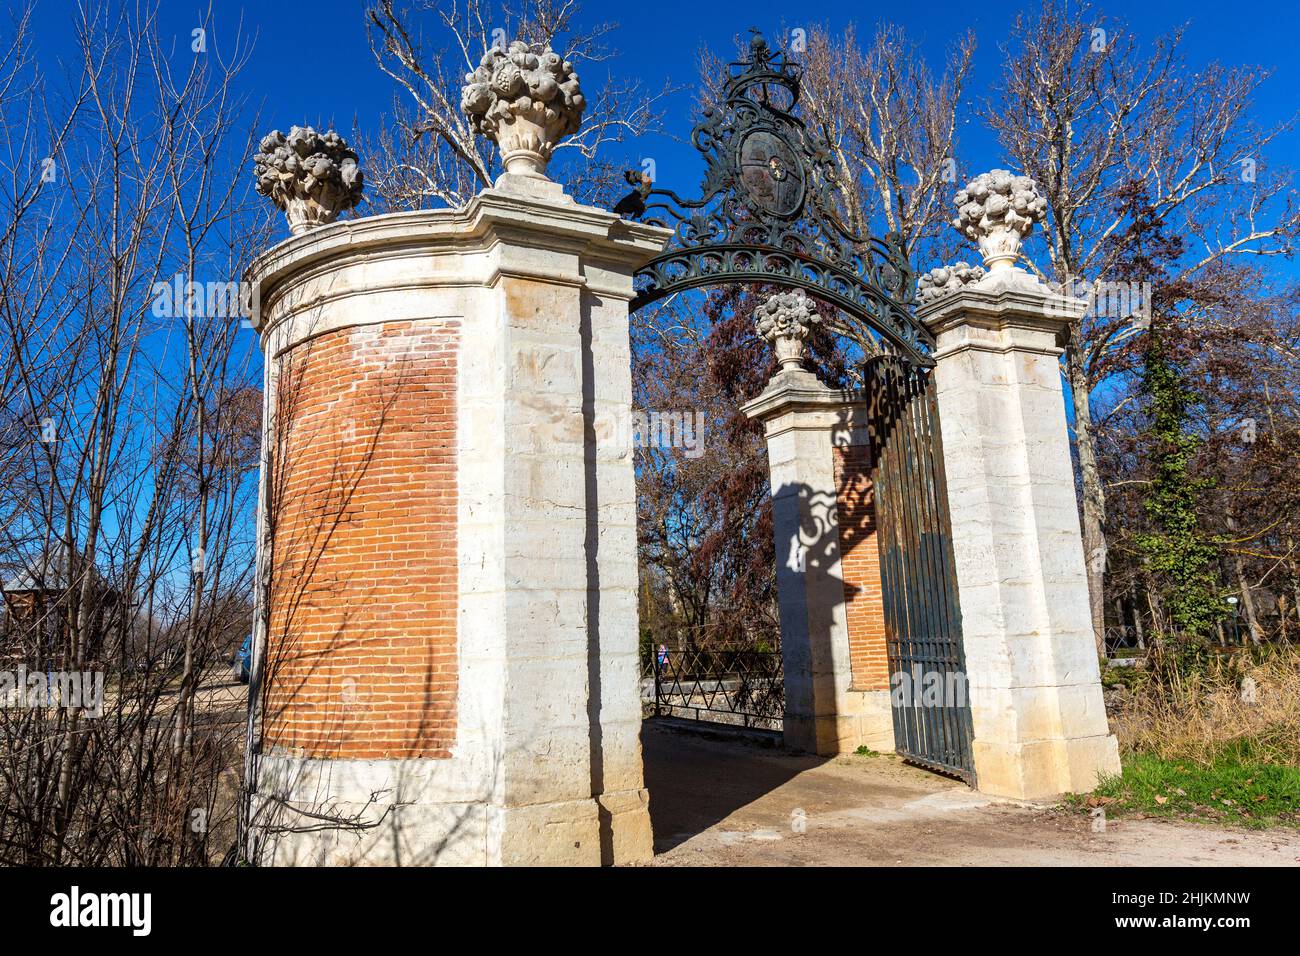 Portes de Puente de la Isleta, jardin de l'île, Aranjuez, Madrid, Espagne Banque D'Images